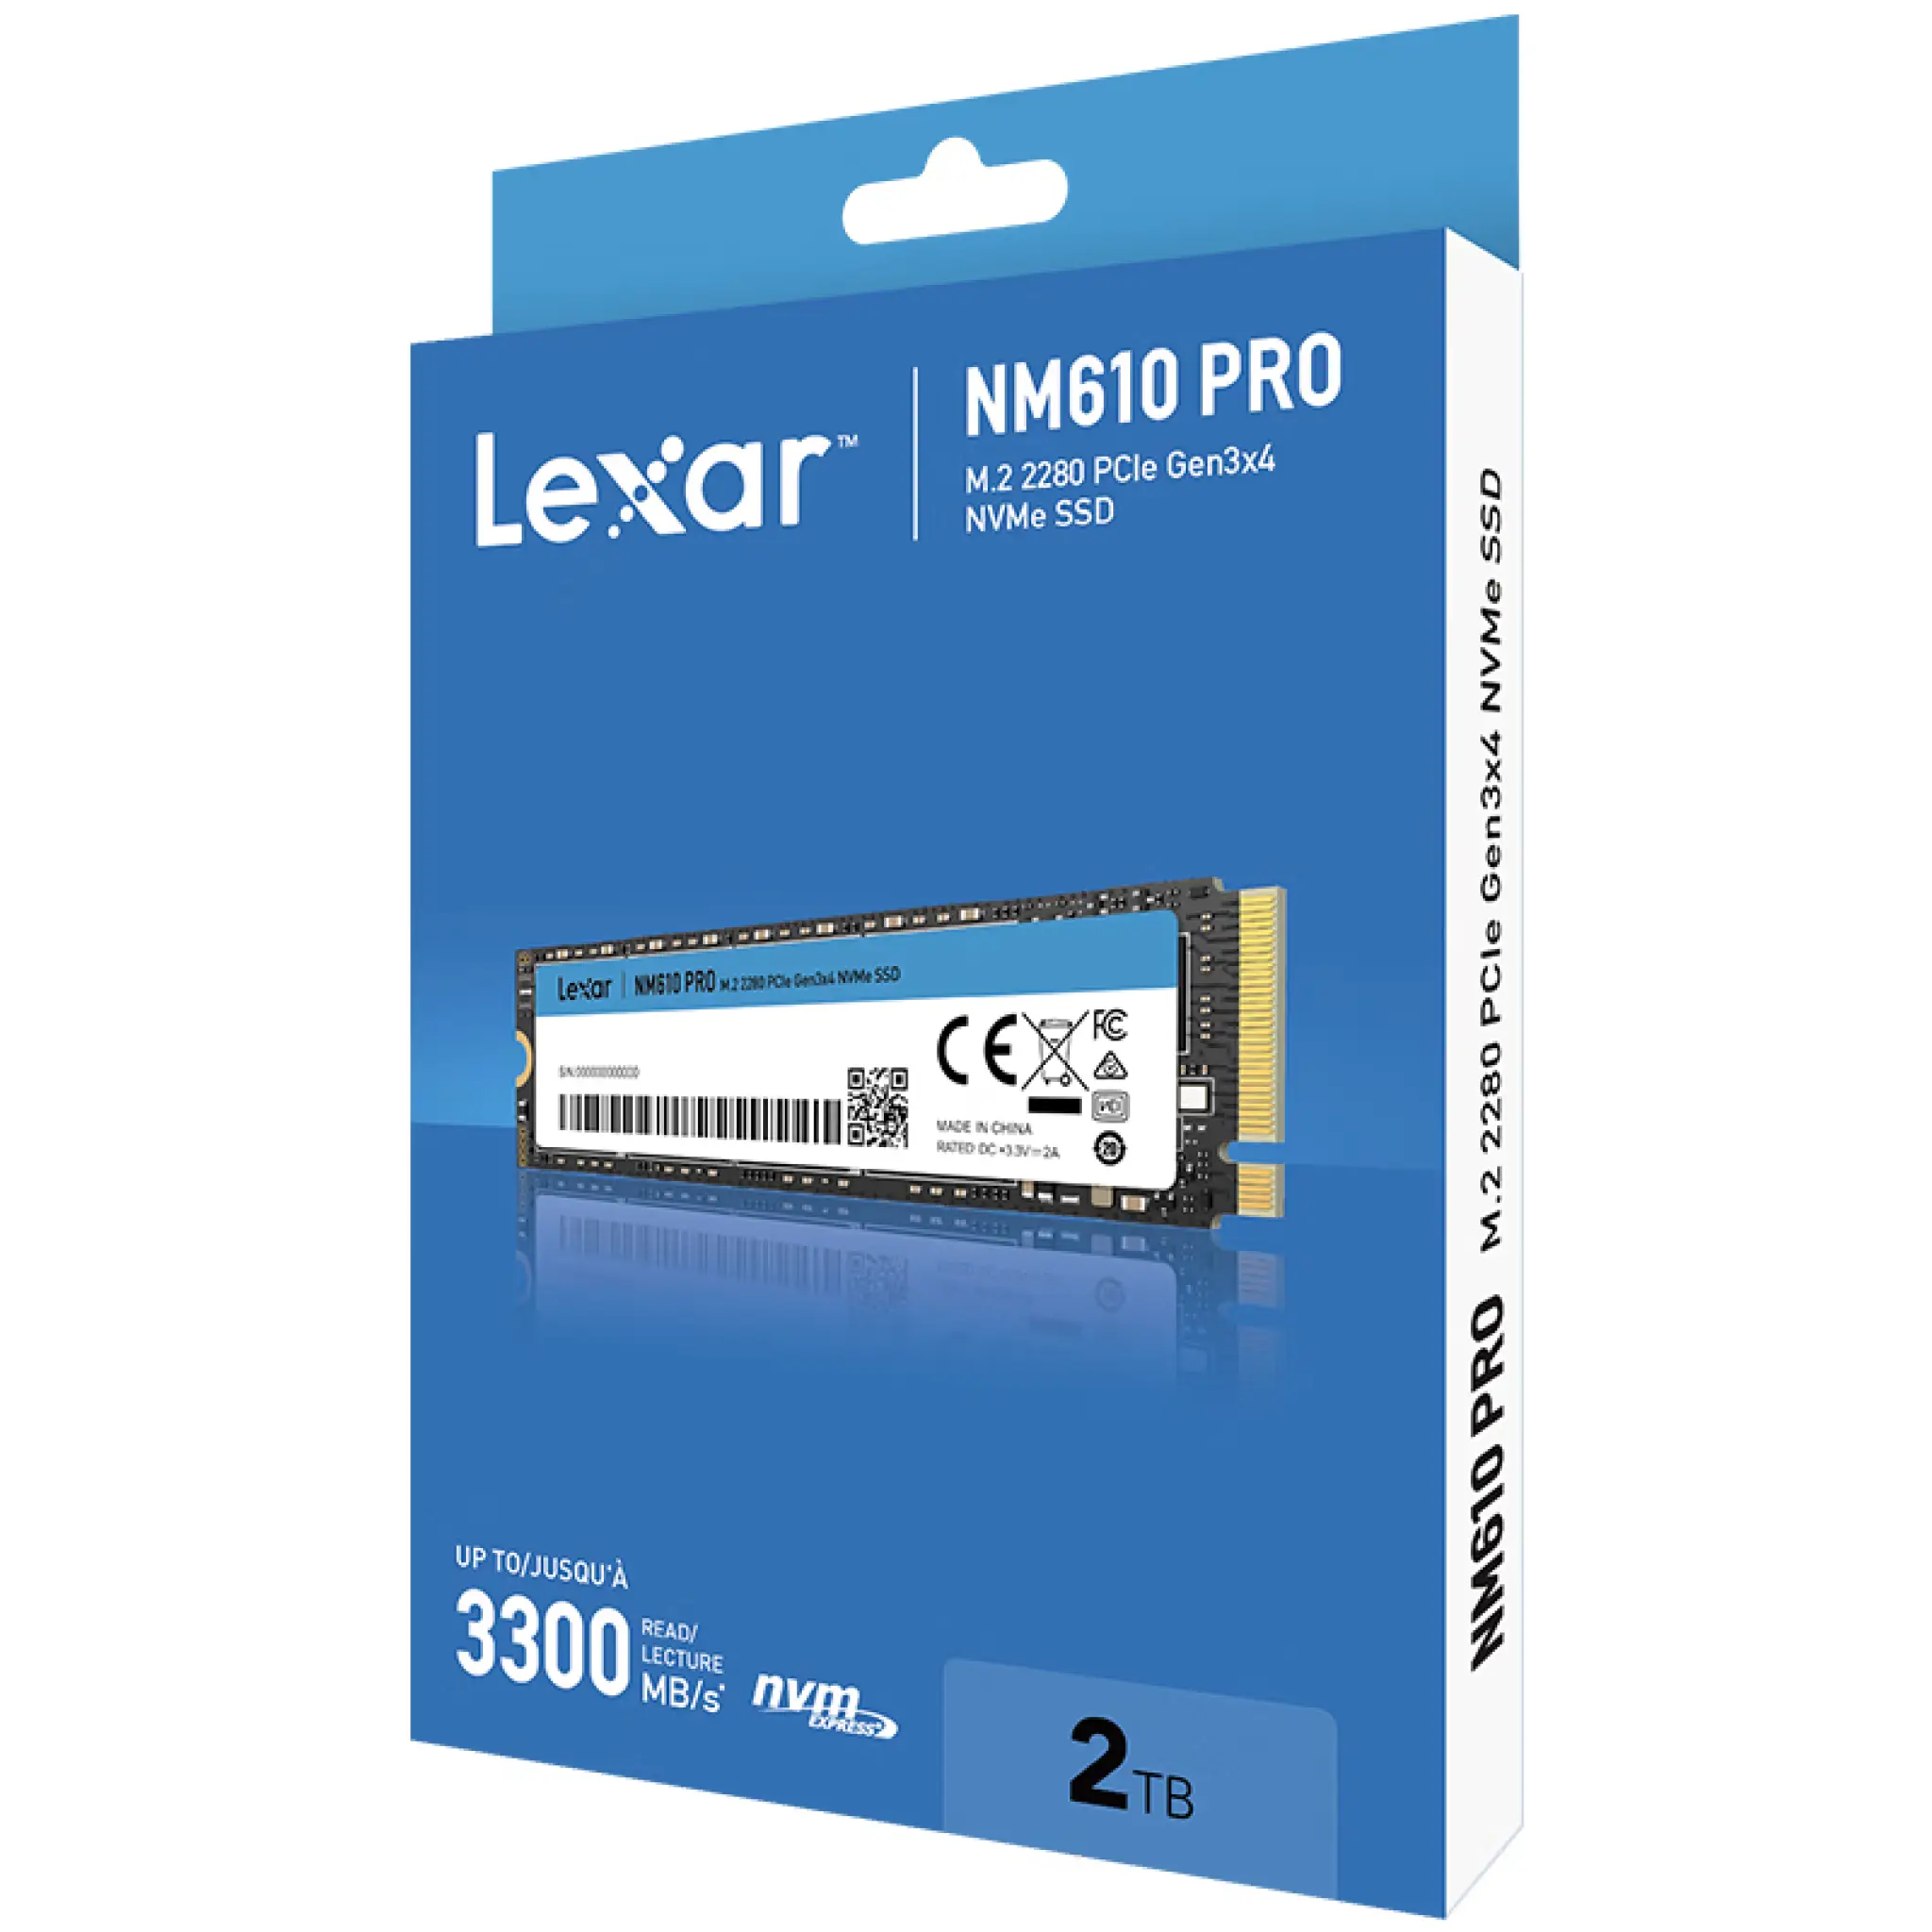 Lexar NM610PRO SSD 2TB NVMe PCIe Gen 3x4